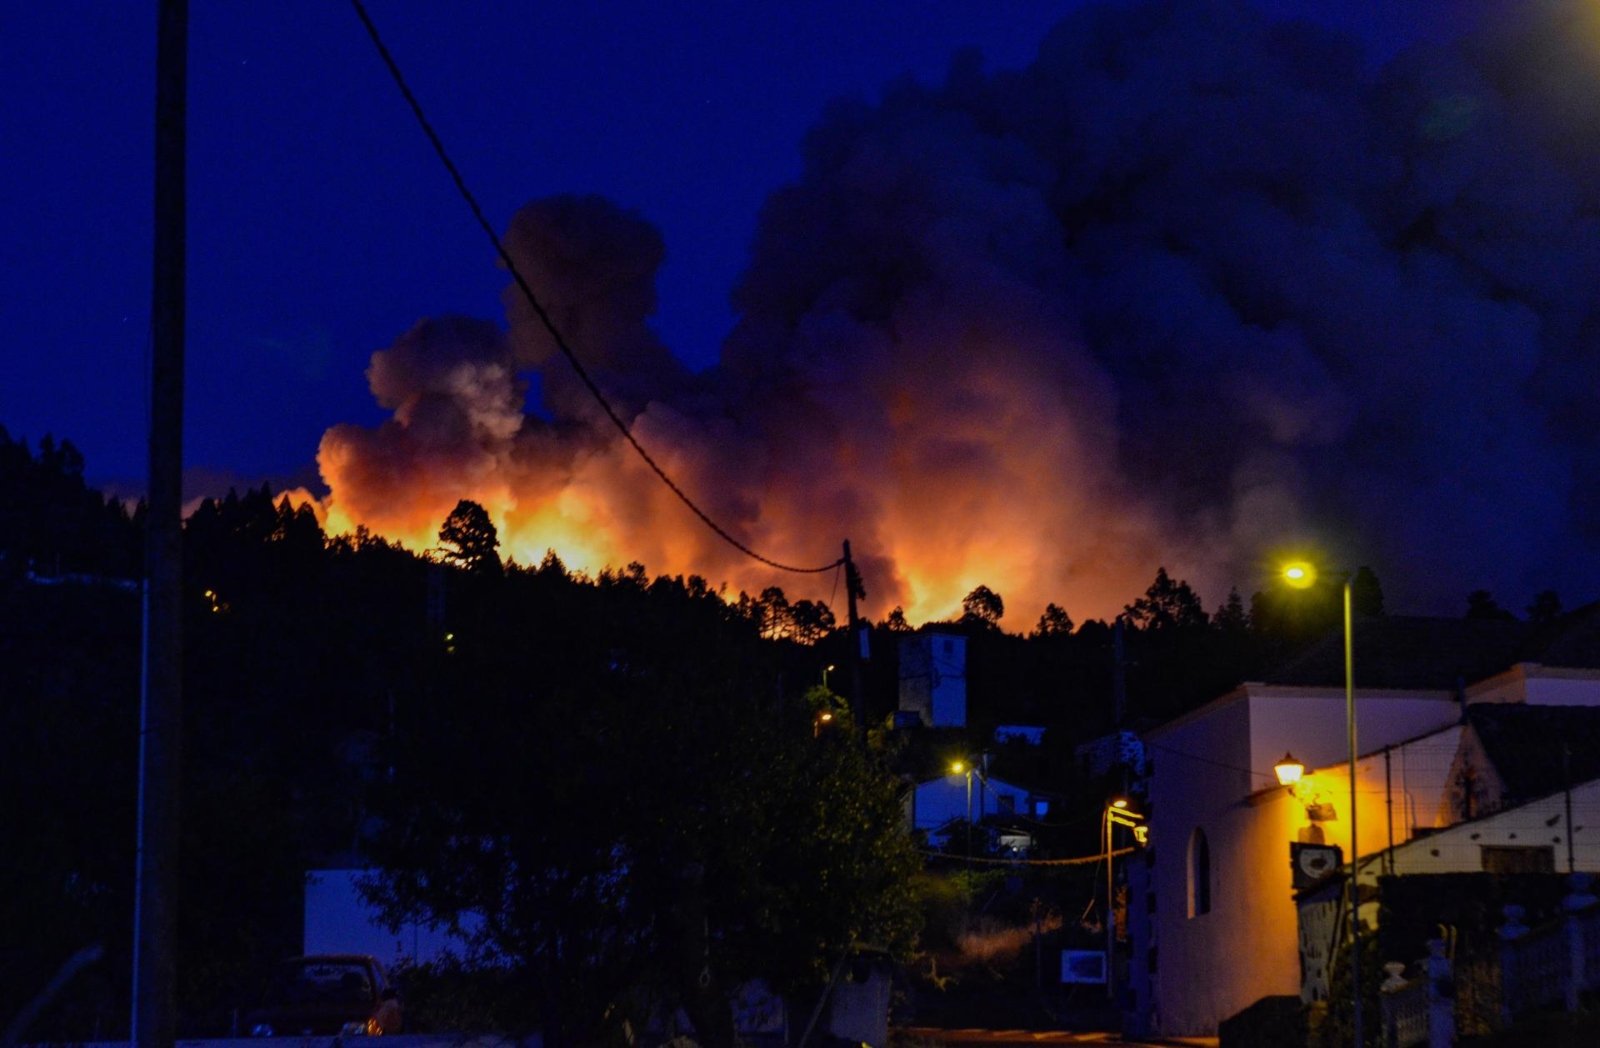 Impressionants imatges de l'incendi de La Palma: el foc, a escassos metres de les cases